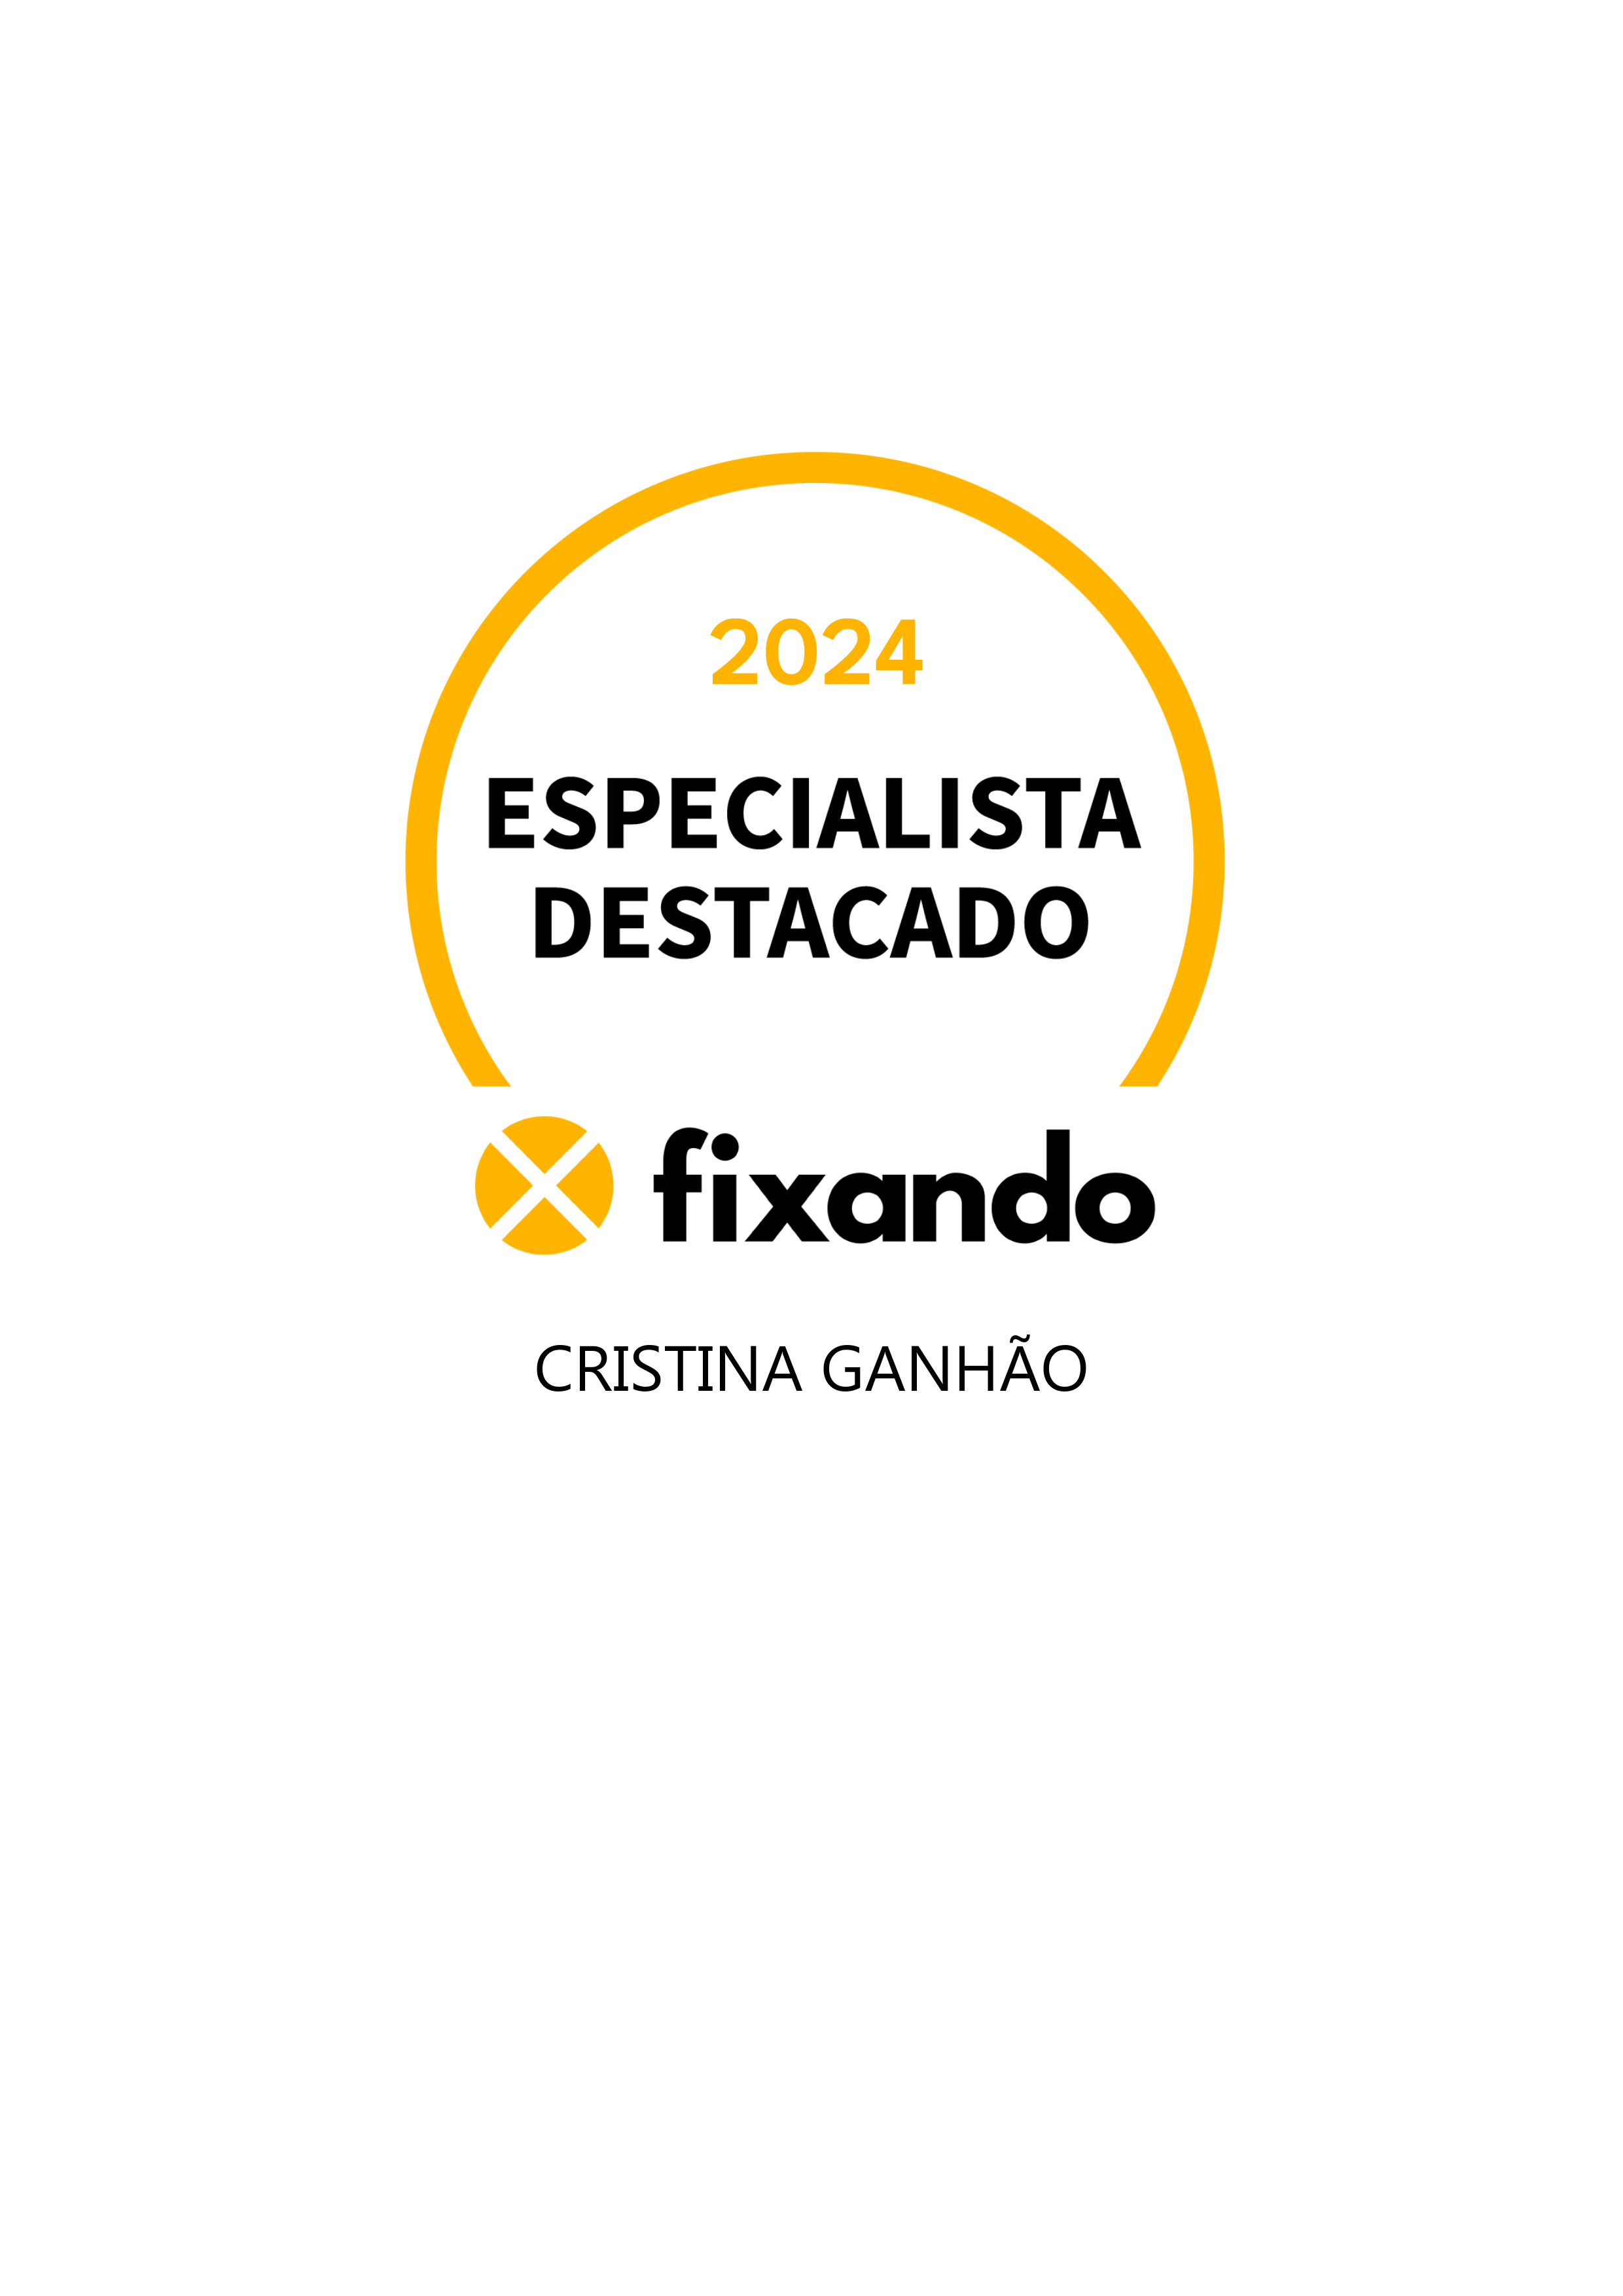 Cristina Ganhão - Vila Nova de Gaia - Traduções